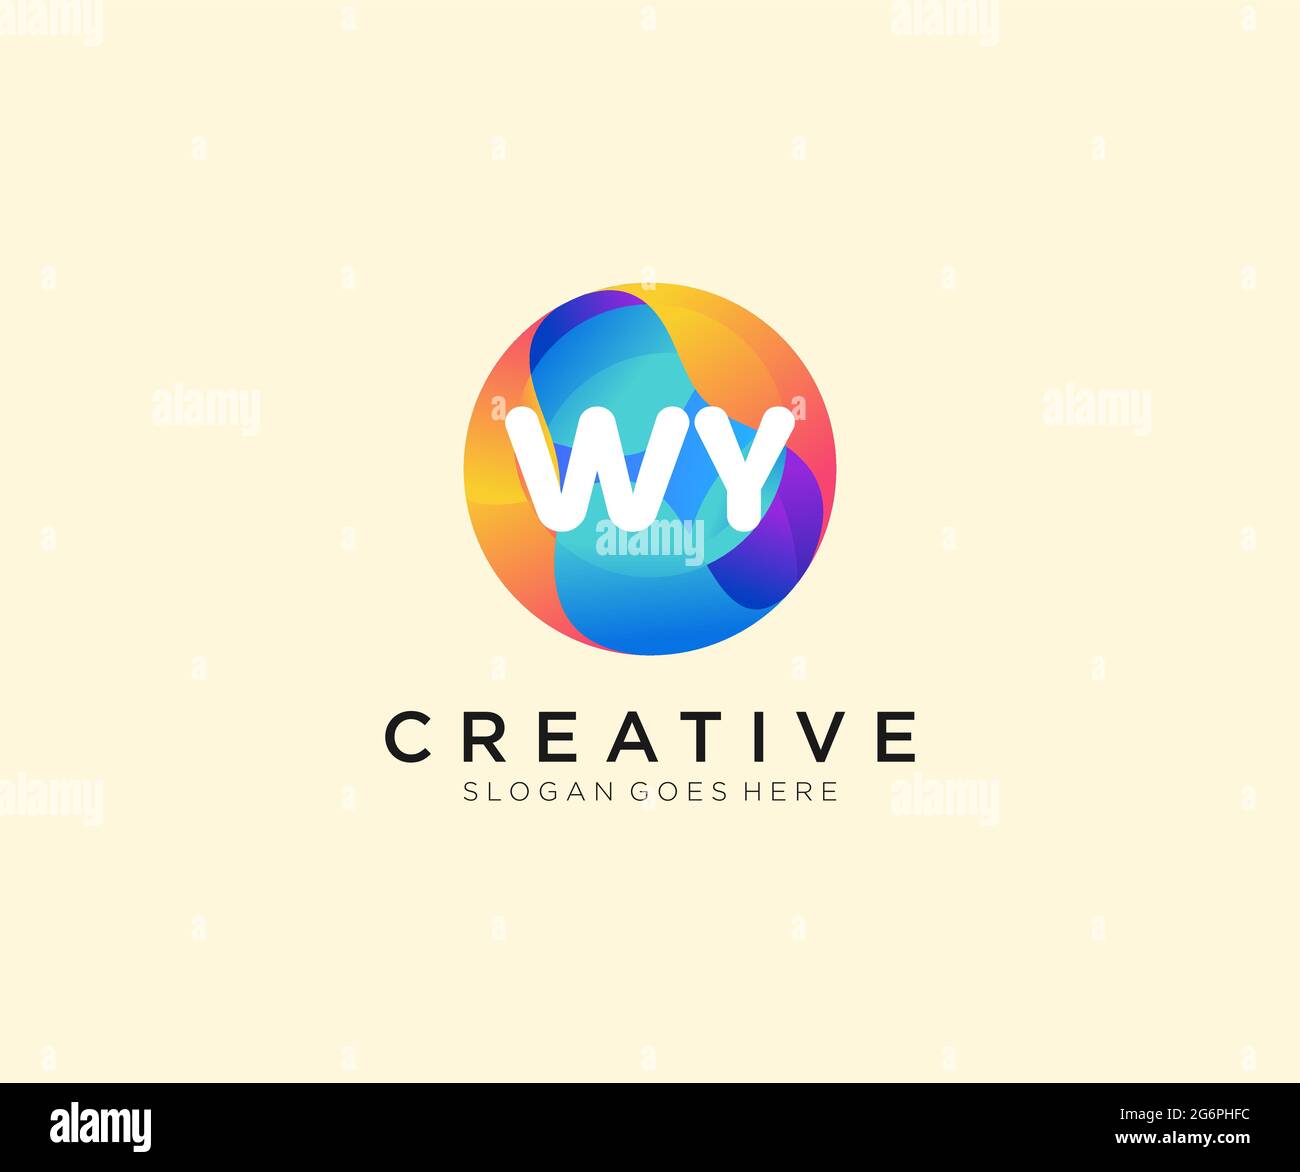 Logotipo inicial de WY con plantilla Colorful Circle Ilustración del Vector